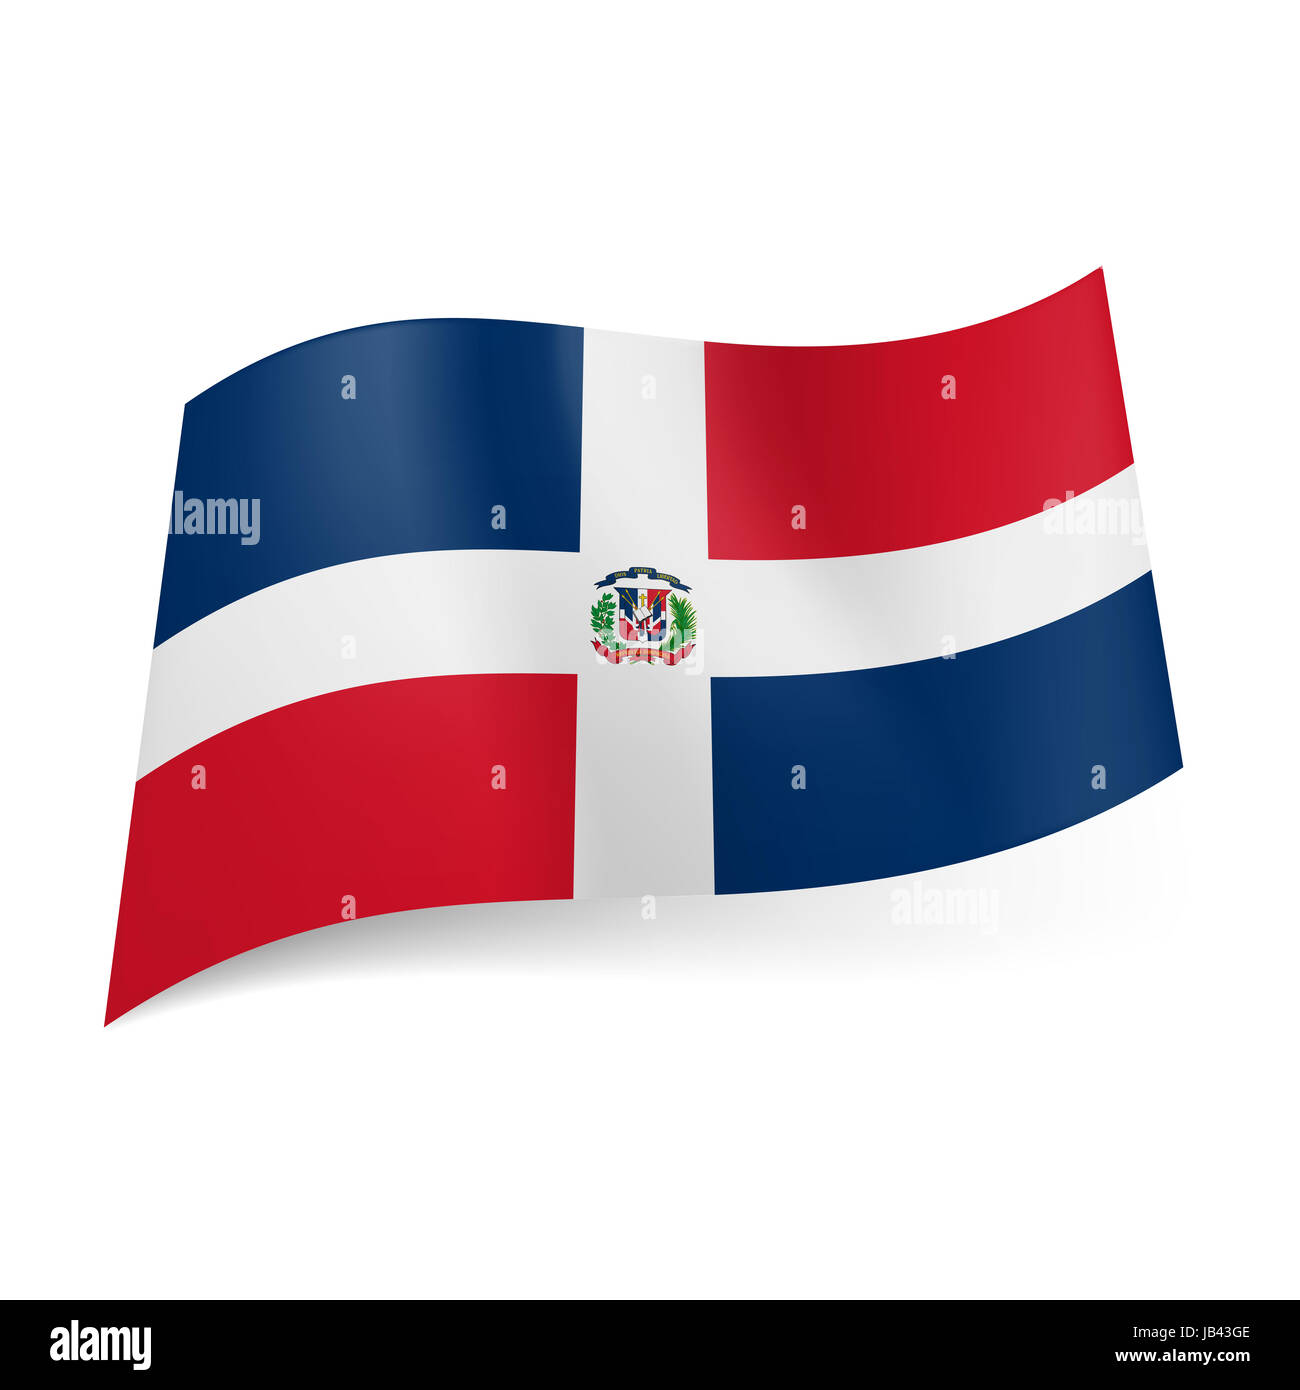 Flagge der Dominikanischen Republik: weißes Kreuz mit Mantel-vonarme, vier  rote und blaue Rechtecke Stockfotografie - Alamy